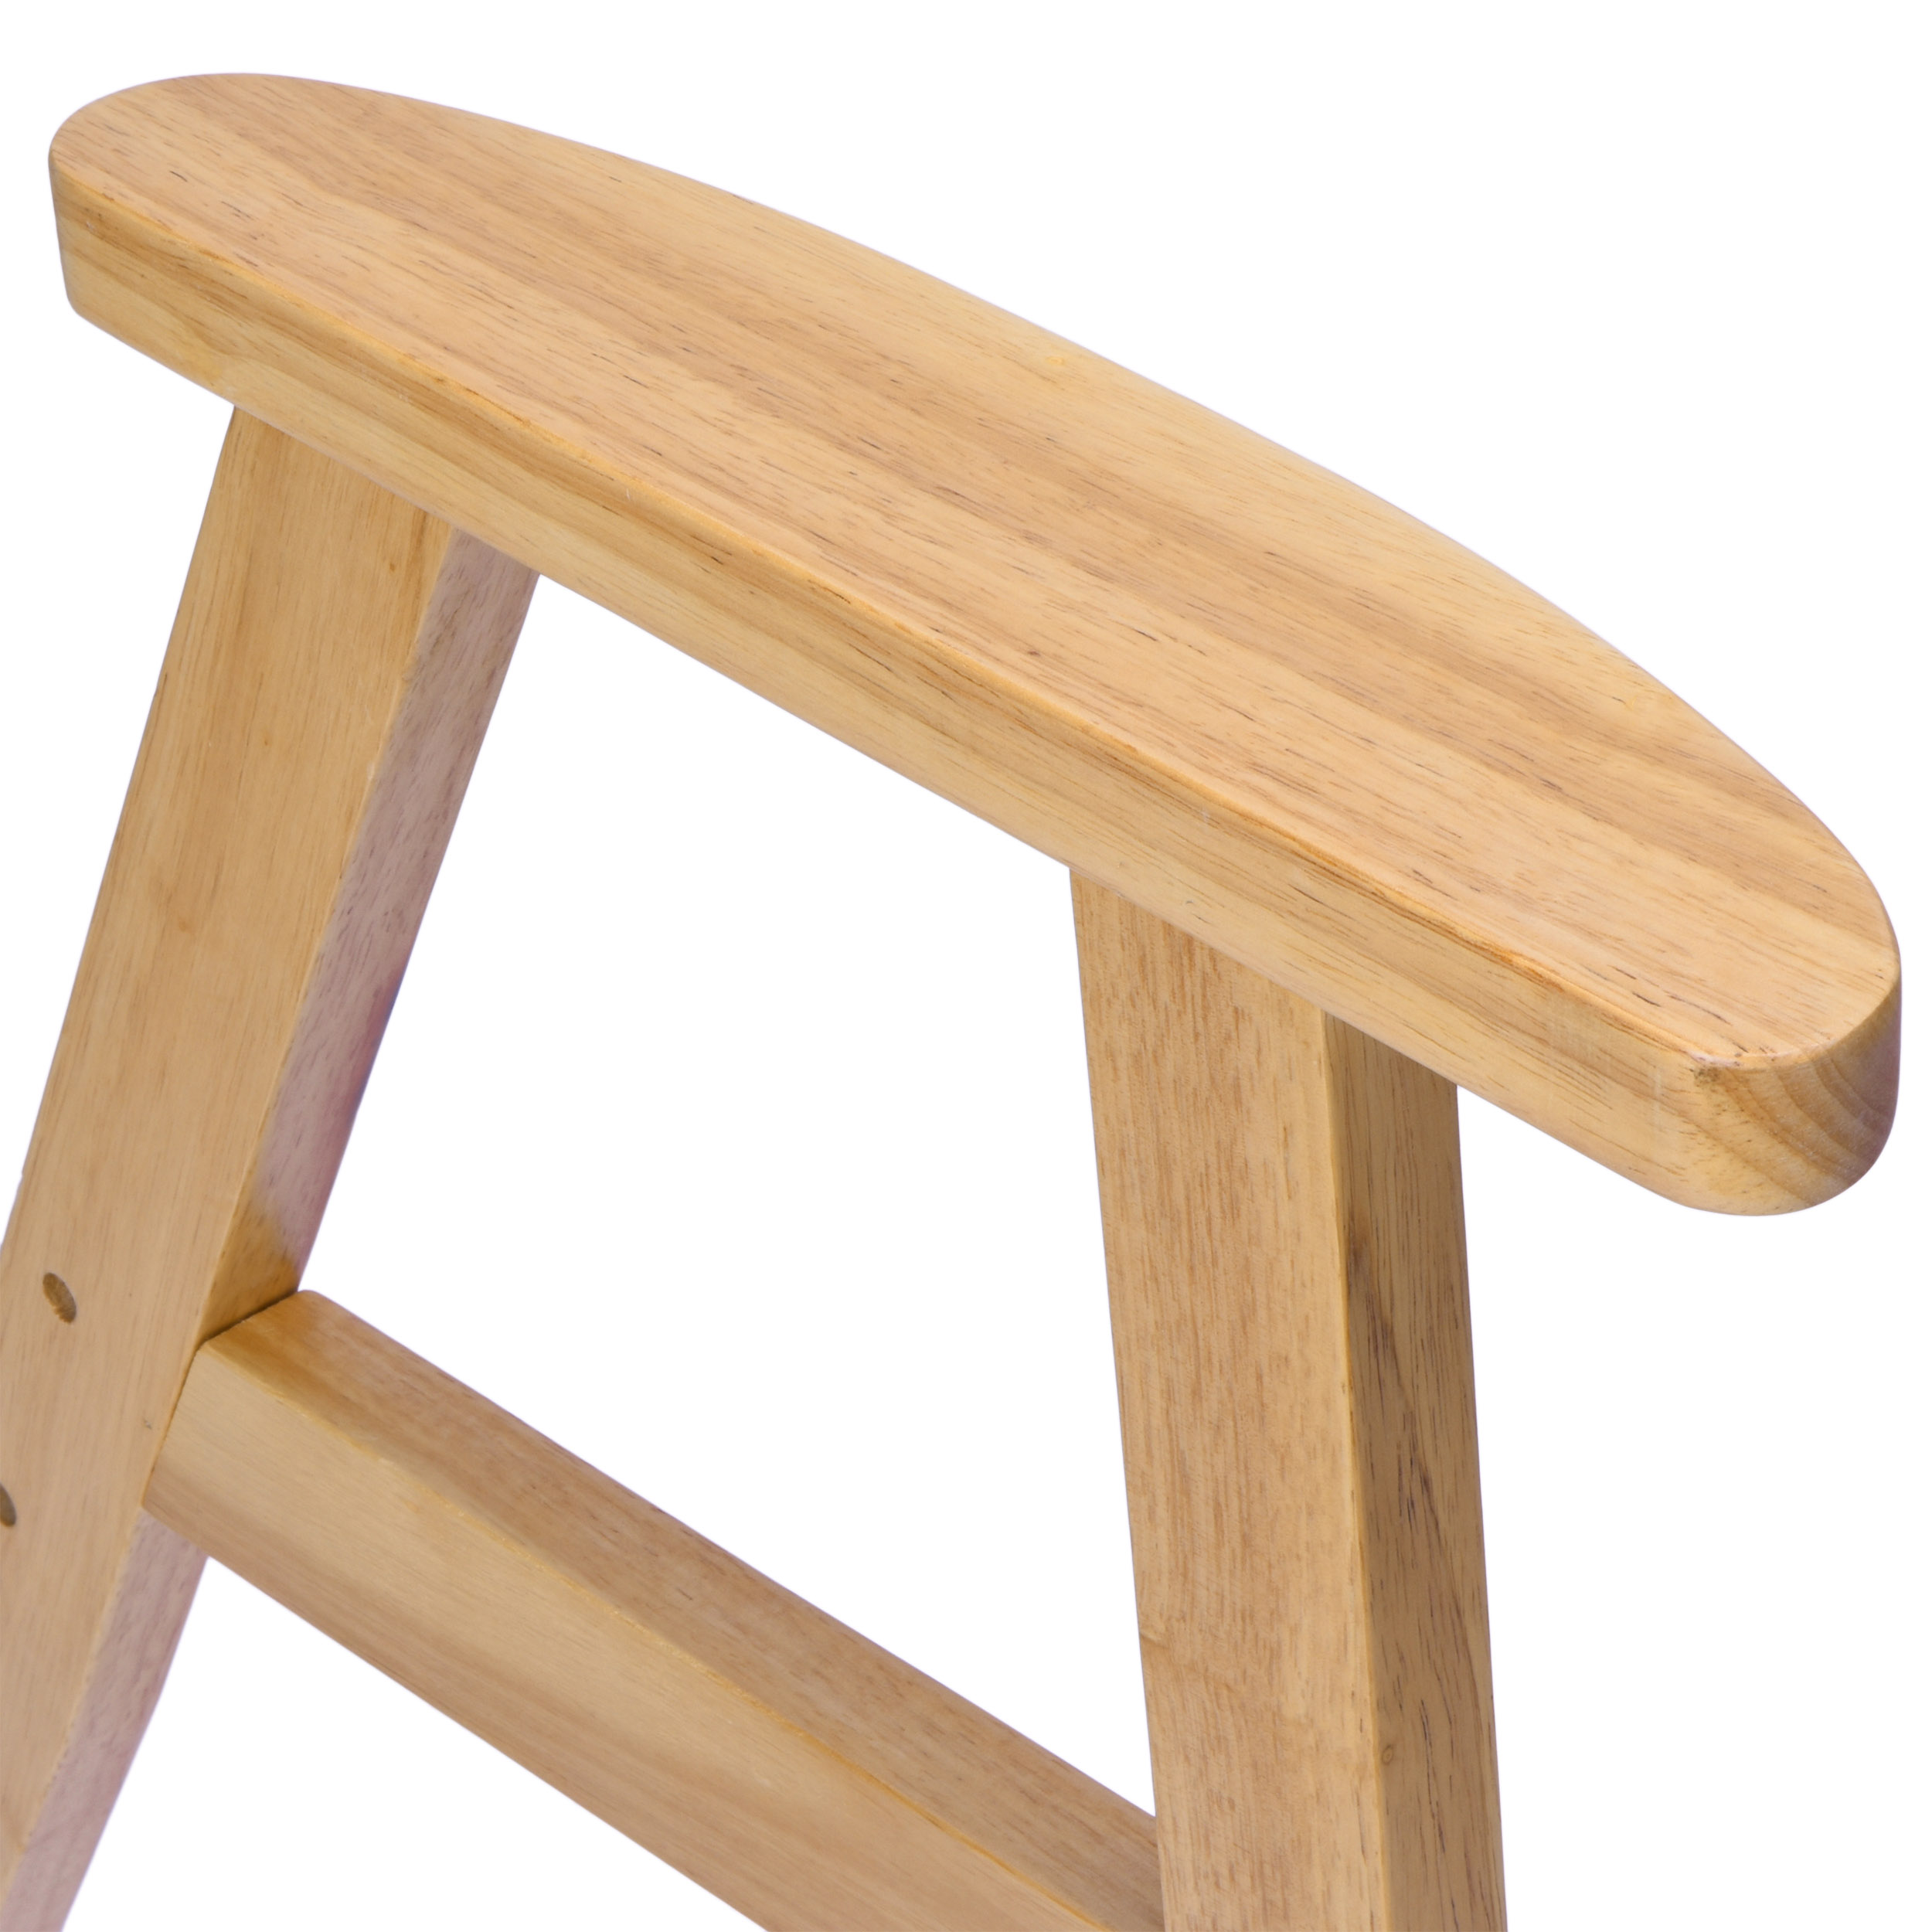 Nogi drewniane do fotela - drewno kauczukowe